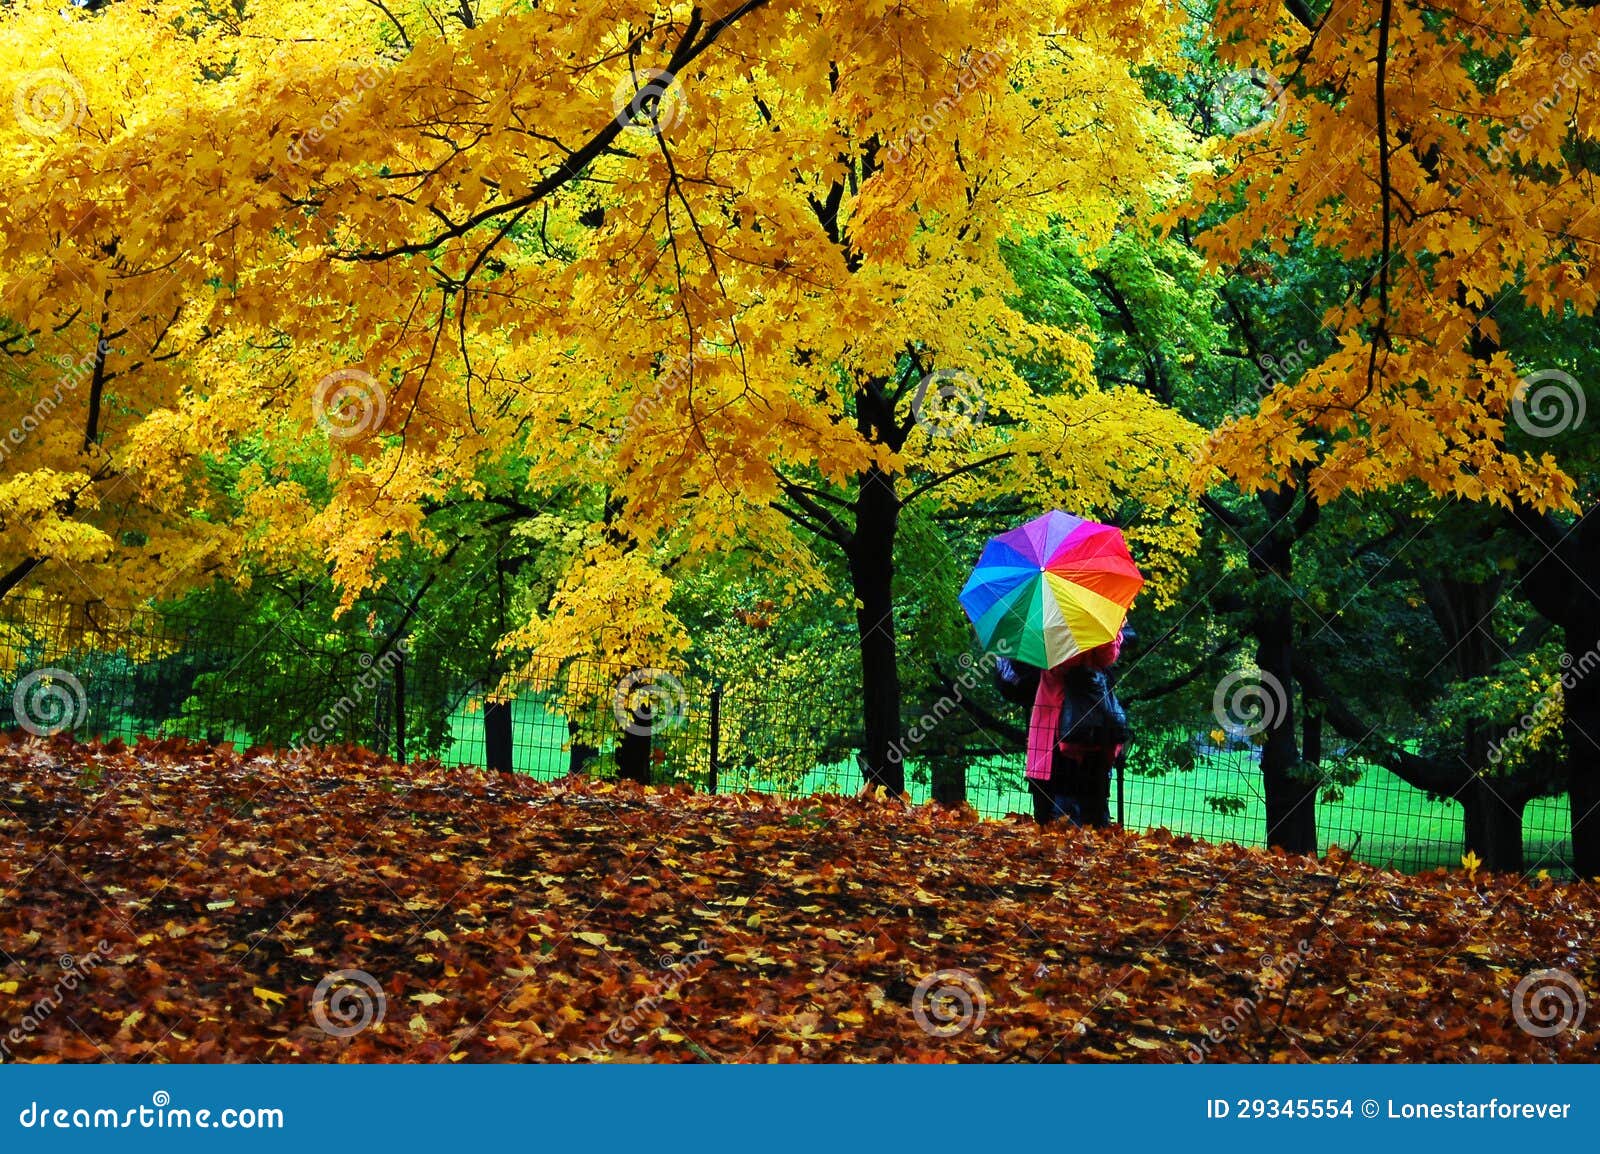 autumn in central park, manhattan, new york